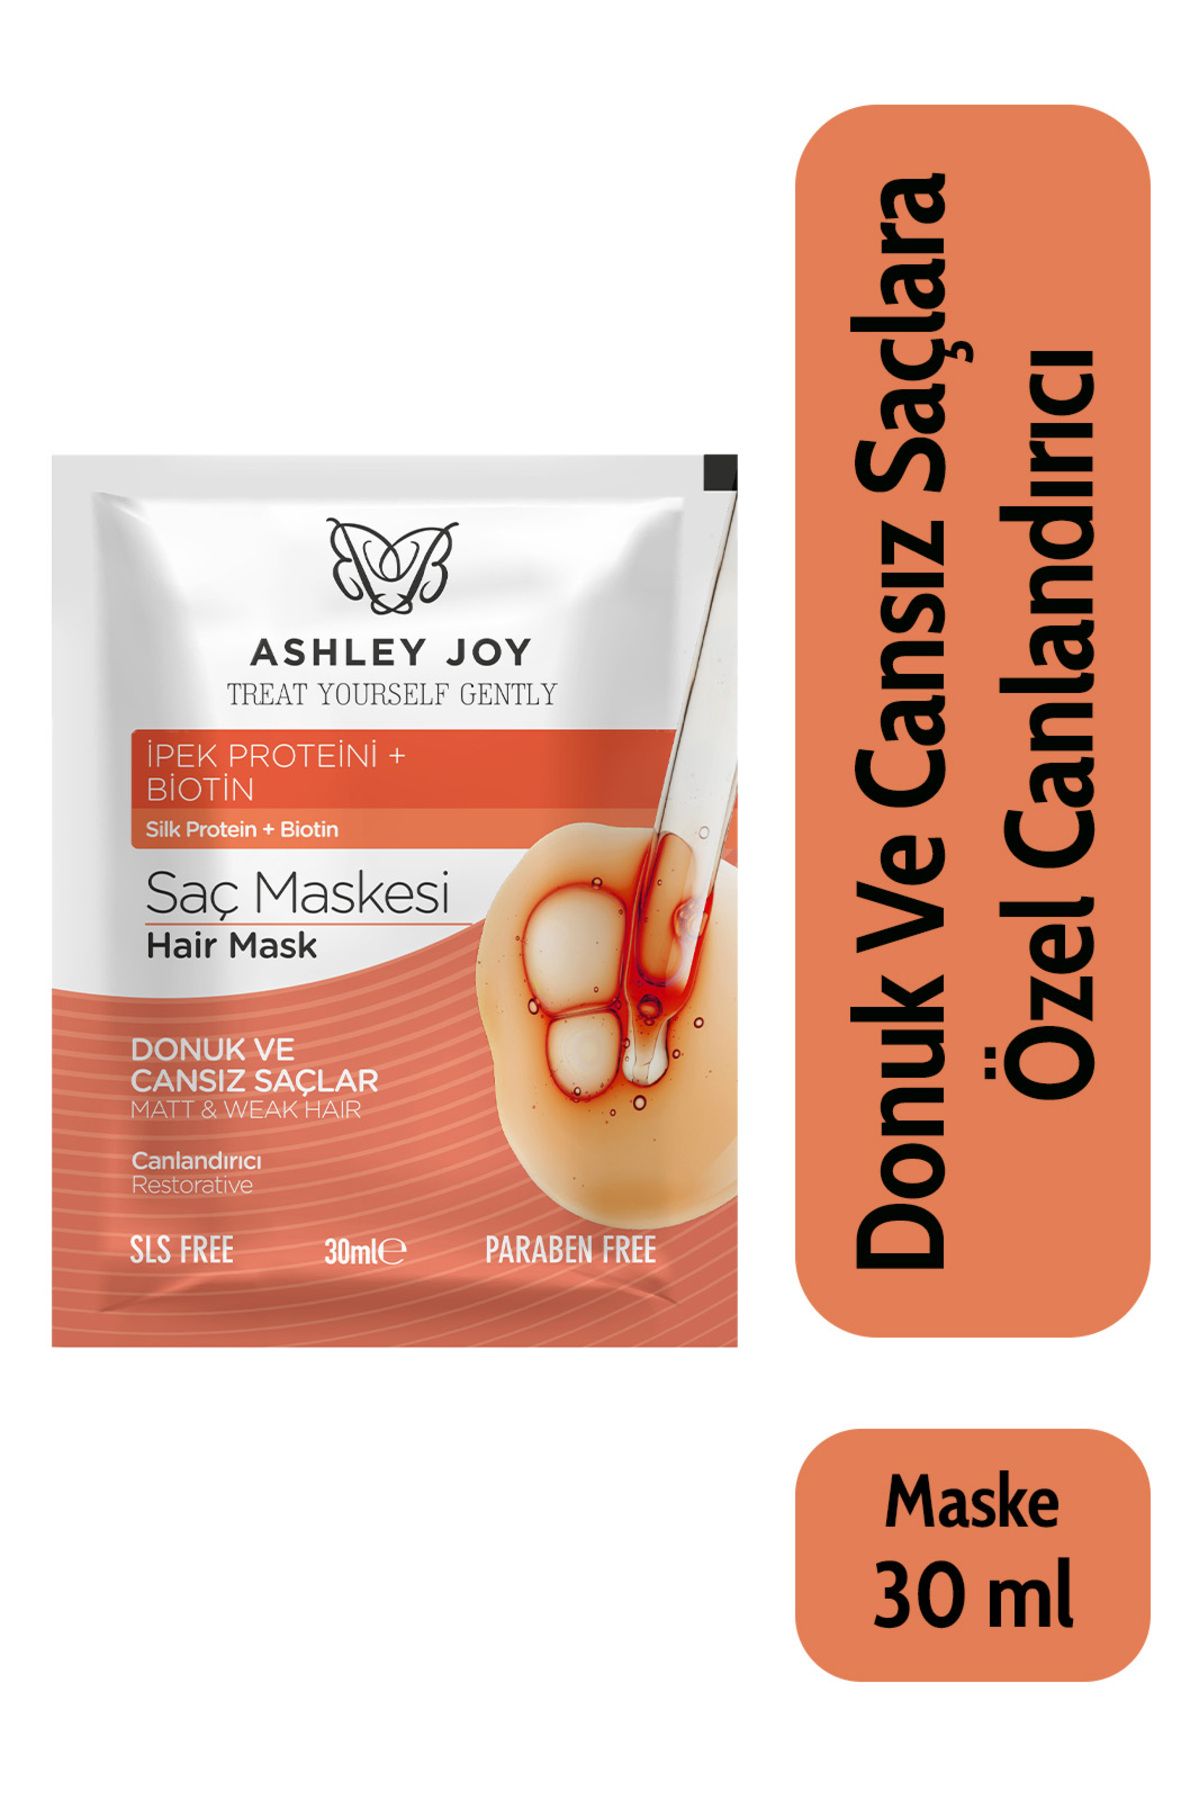 Ashley Joy Donuk Ve Cansız Saçlara Özel Ipek Proteini Içeren Canlandırıcı Saç Maskesi 30 ml